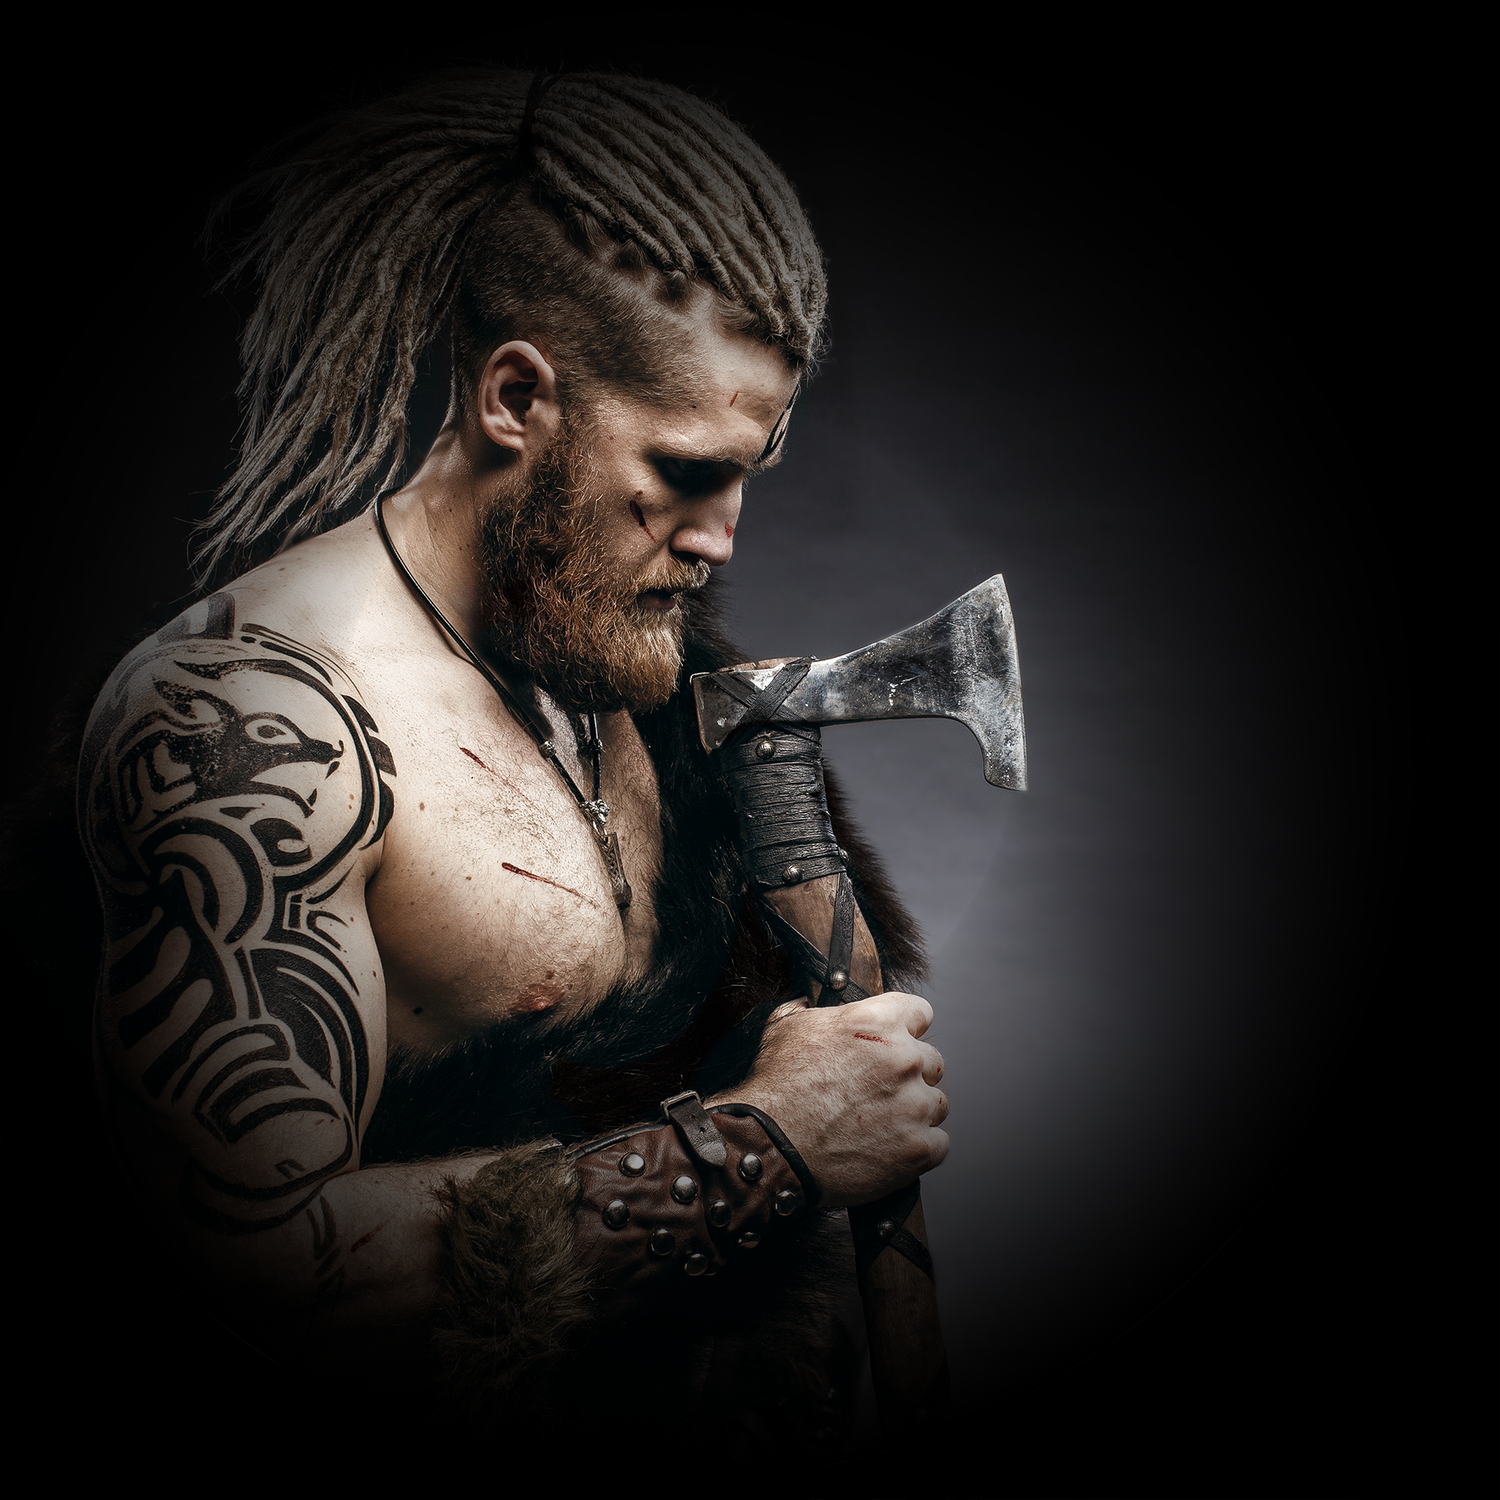 Strong Viking gripping an axe.